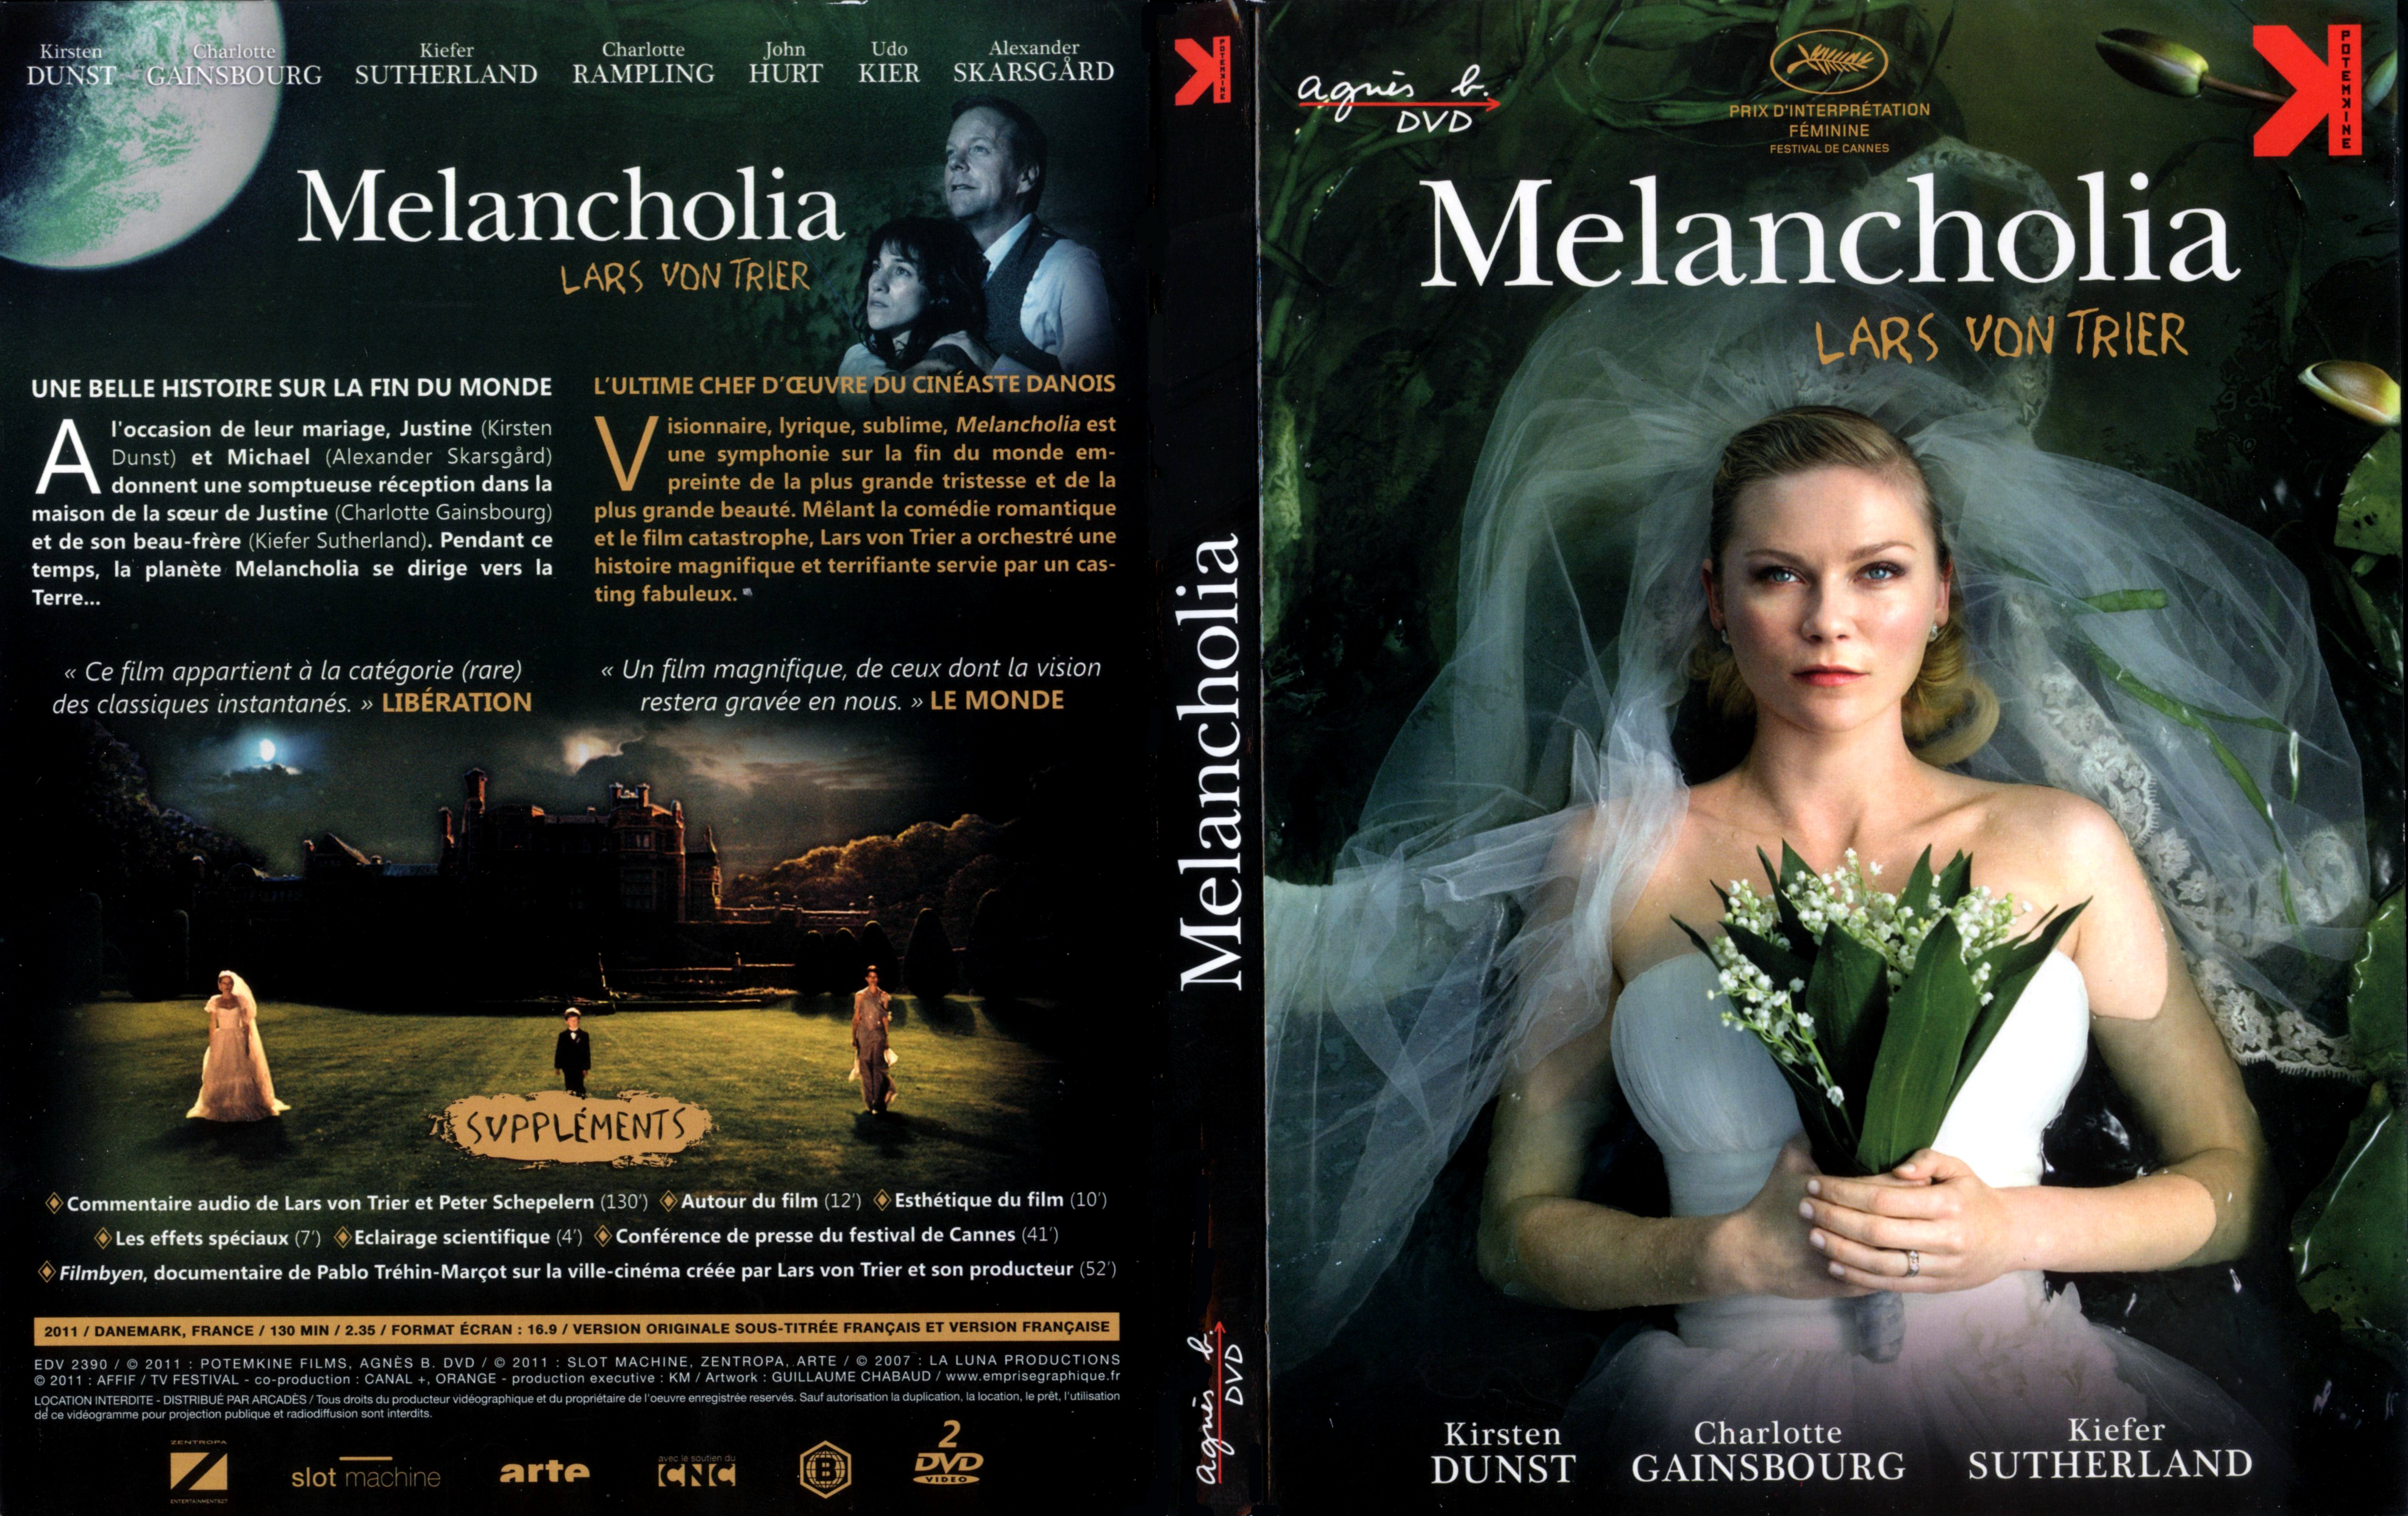 Jaquette DVD Melancholia v3